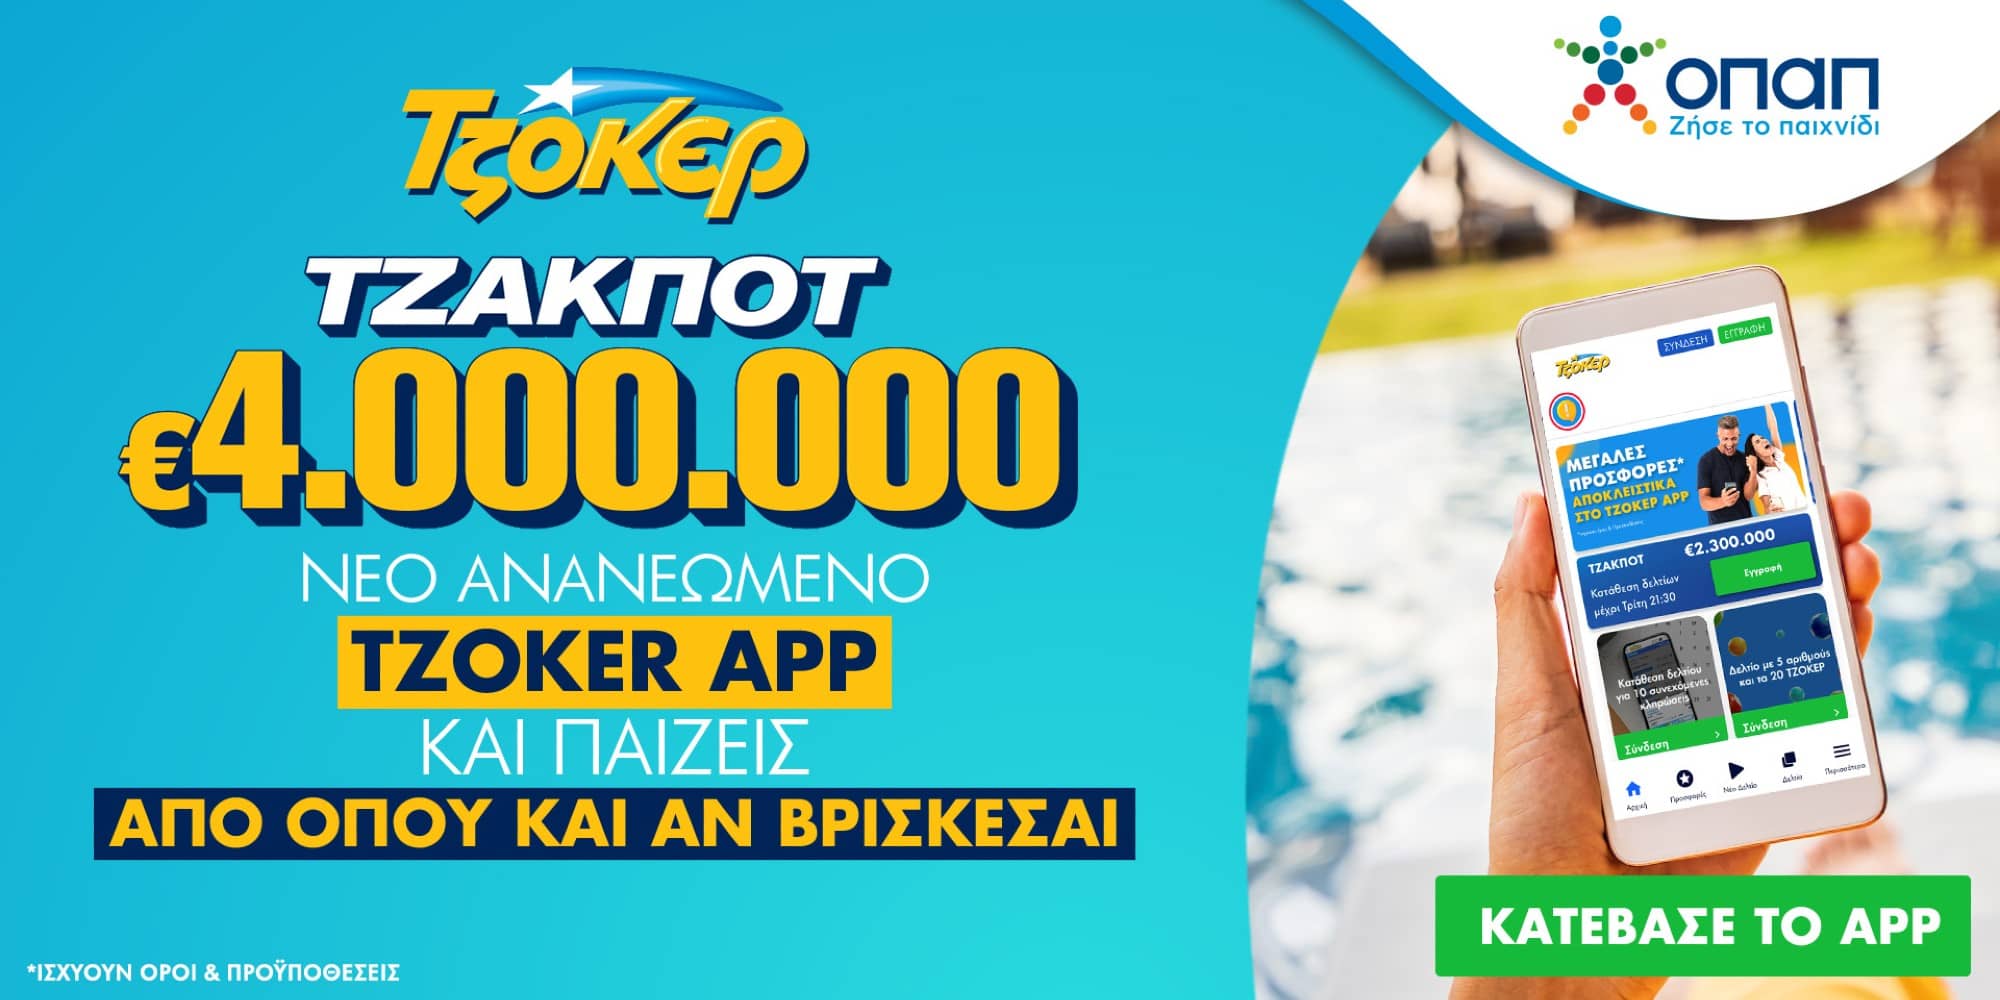 Καύσωνας στο Τζόκερ με 4 εκατ. ευρώ - Πακέτα συνεχόμενων κληρώσεων και γρήγορη κατάθεση δελτίου μέσα από το ανανεωμένο TZOKER App